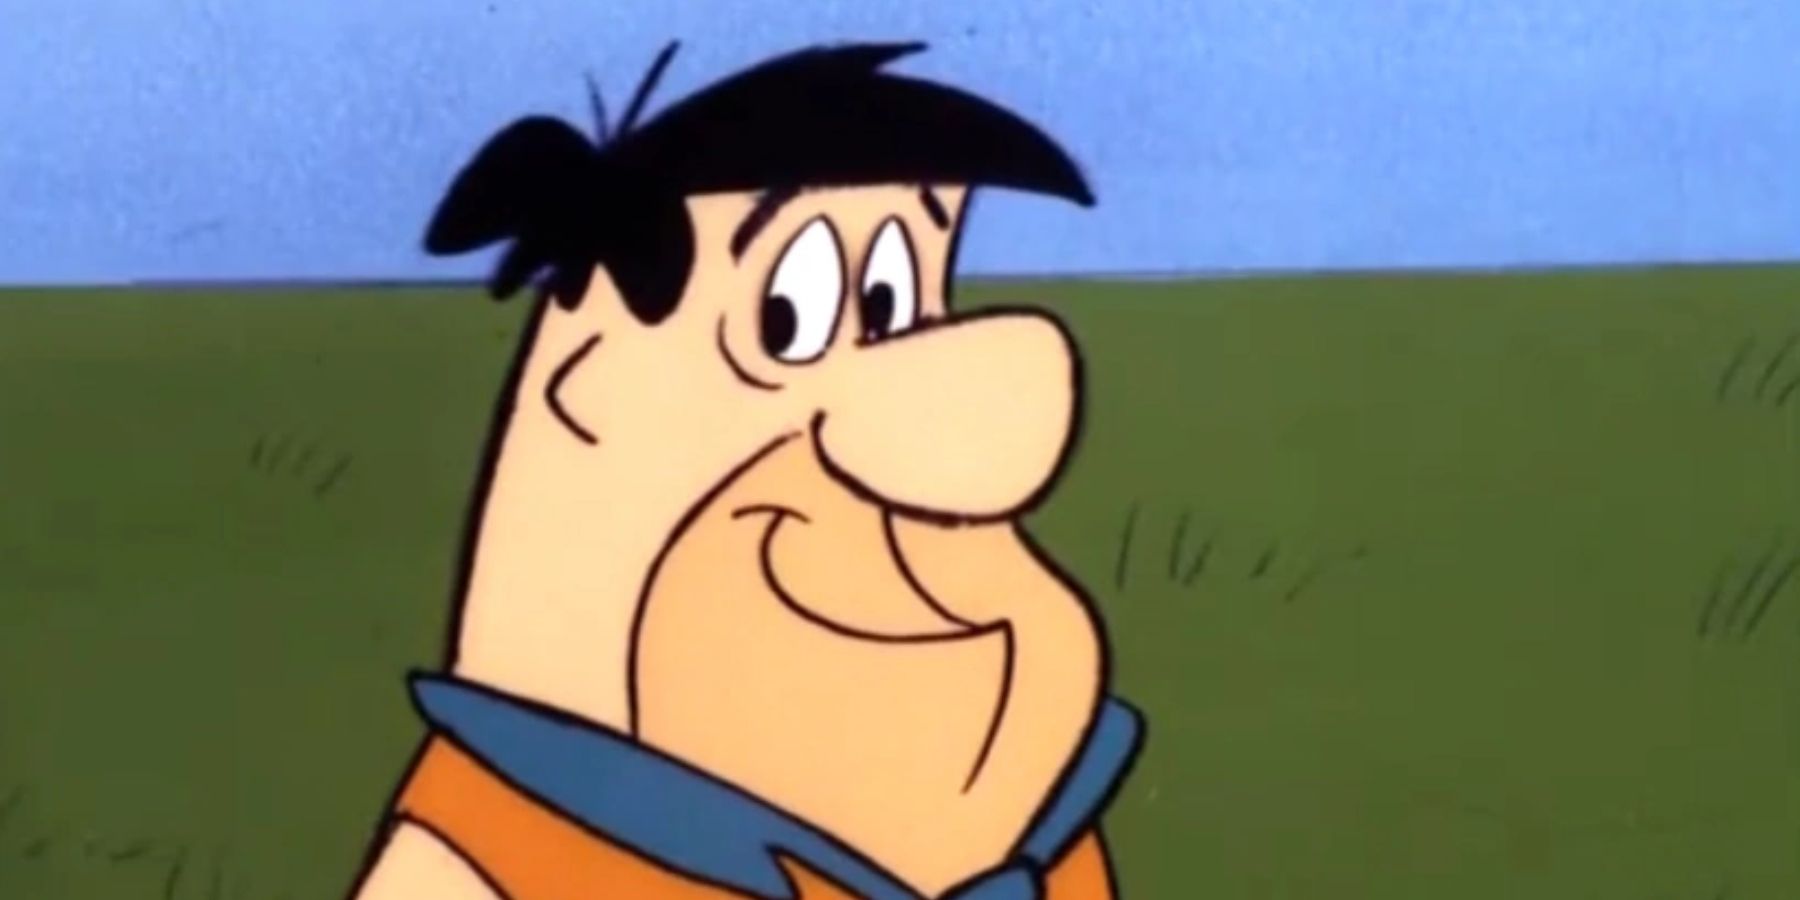 Fred Flintstone in the Flintstones